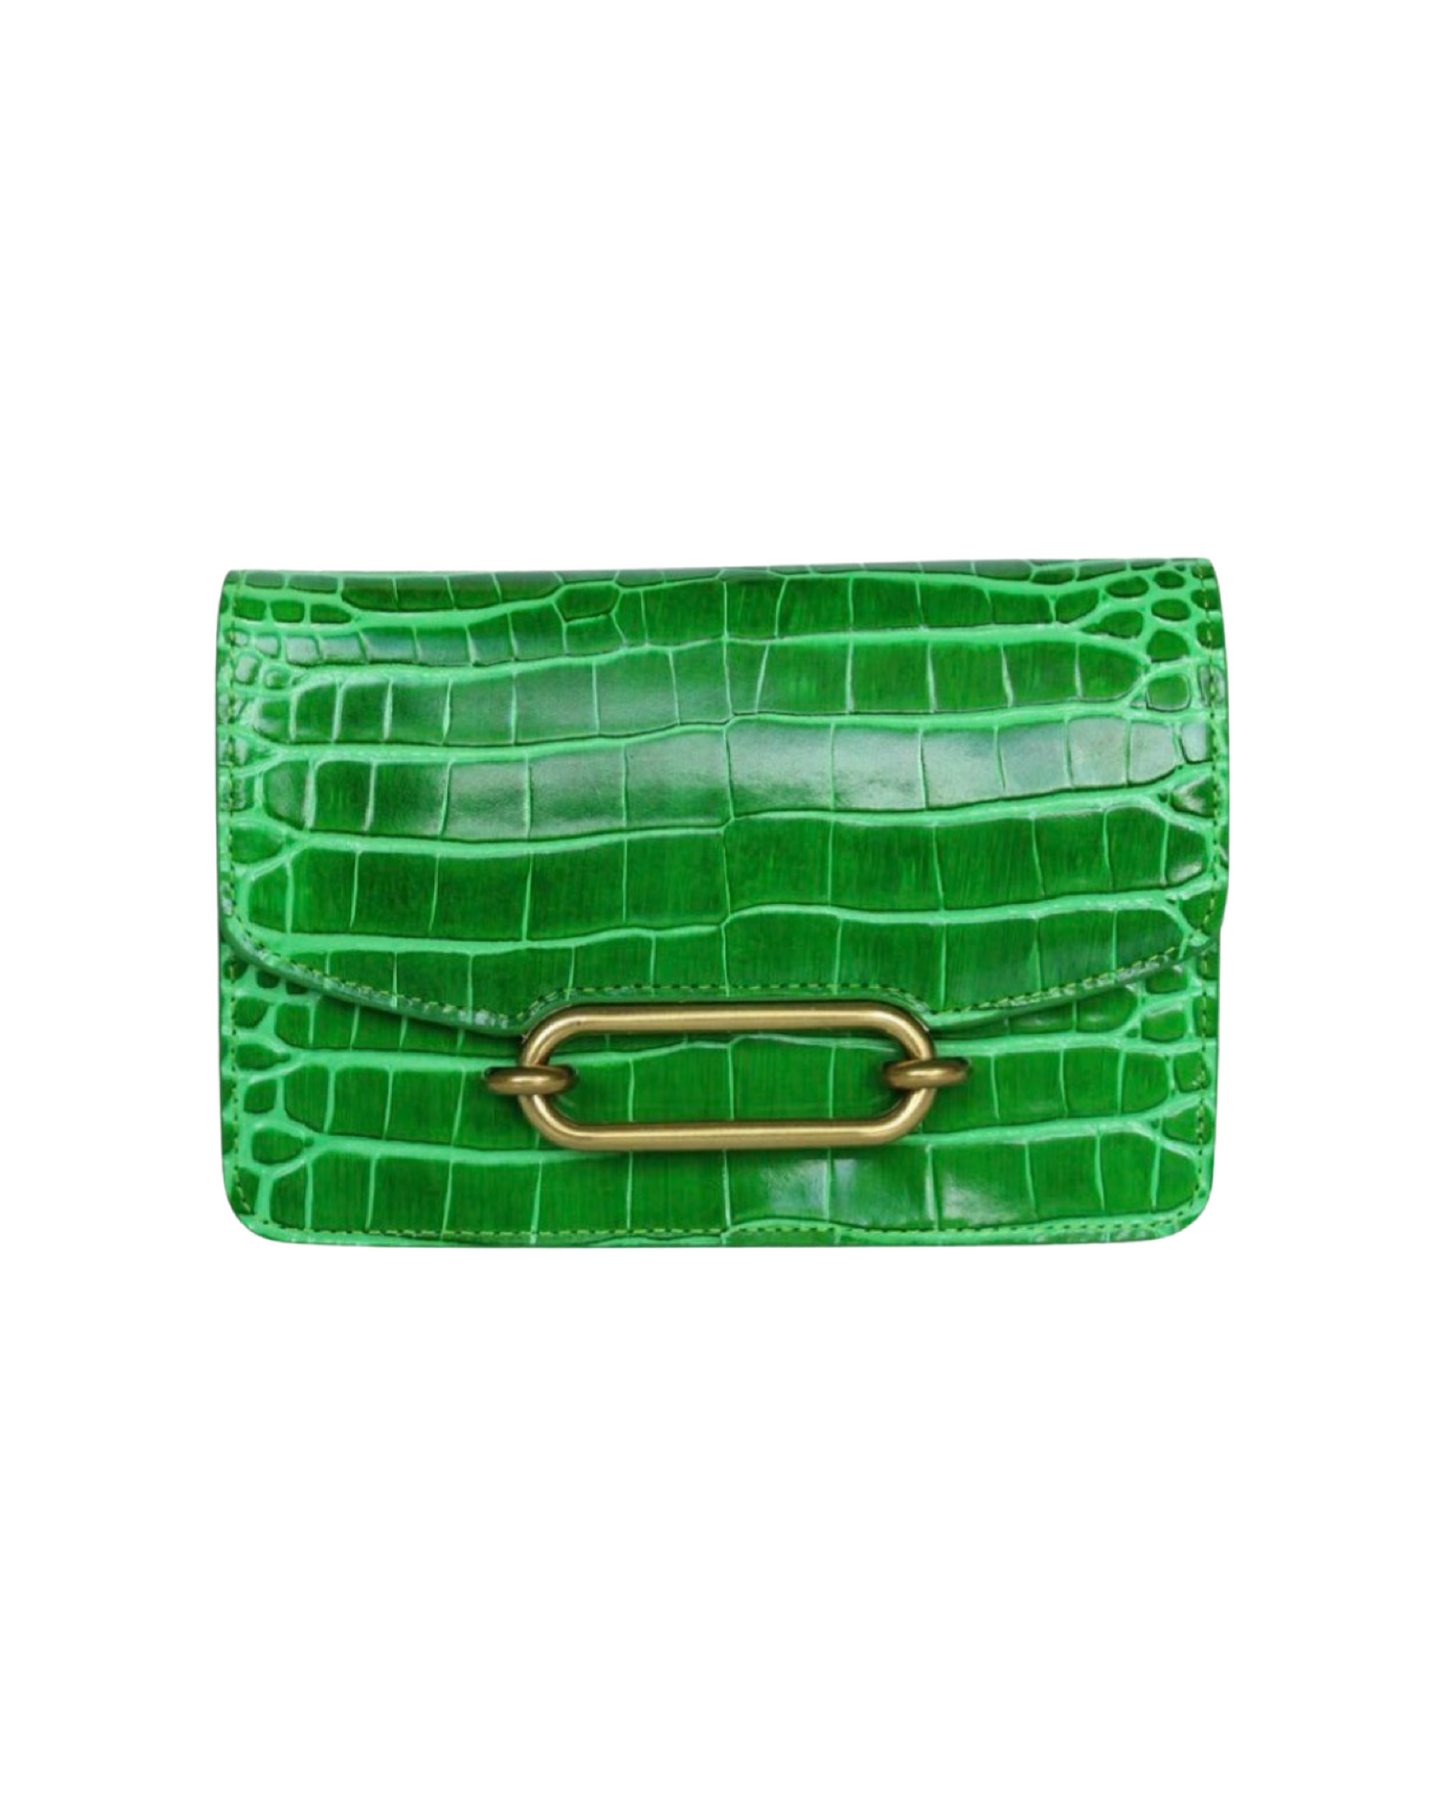 Franco Bag By Kathryn Wilson - Emerald Croc